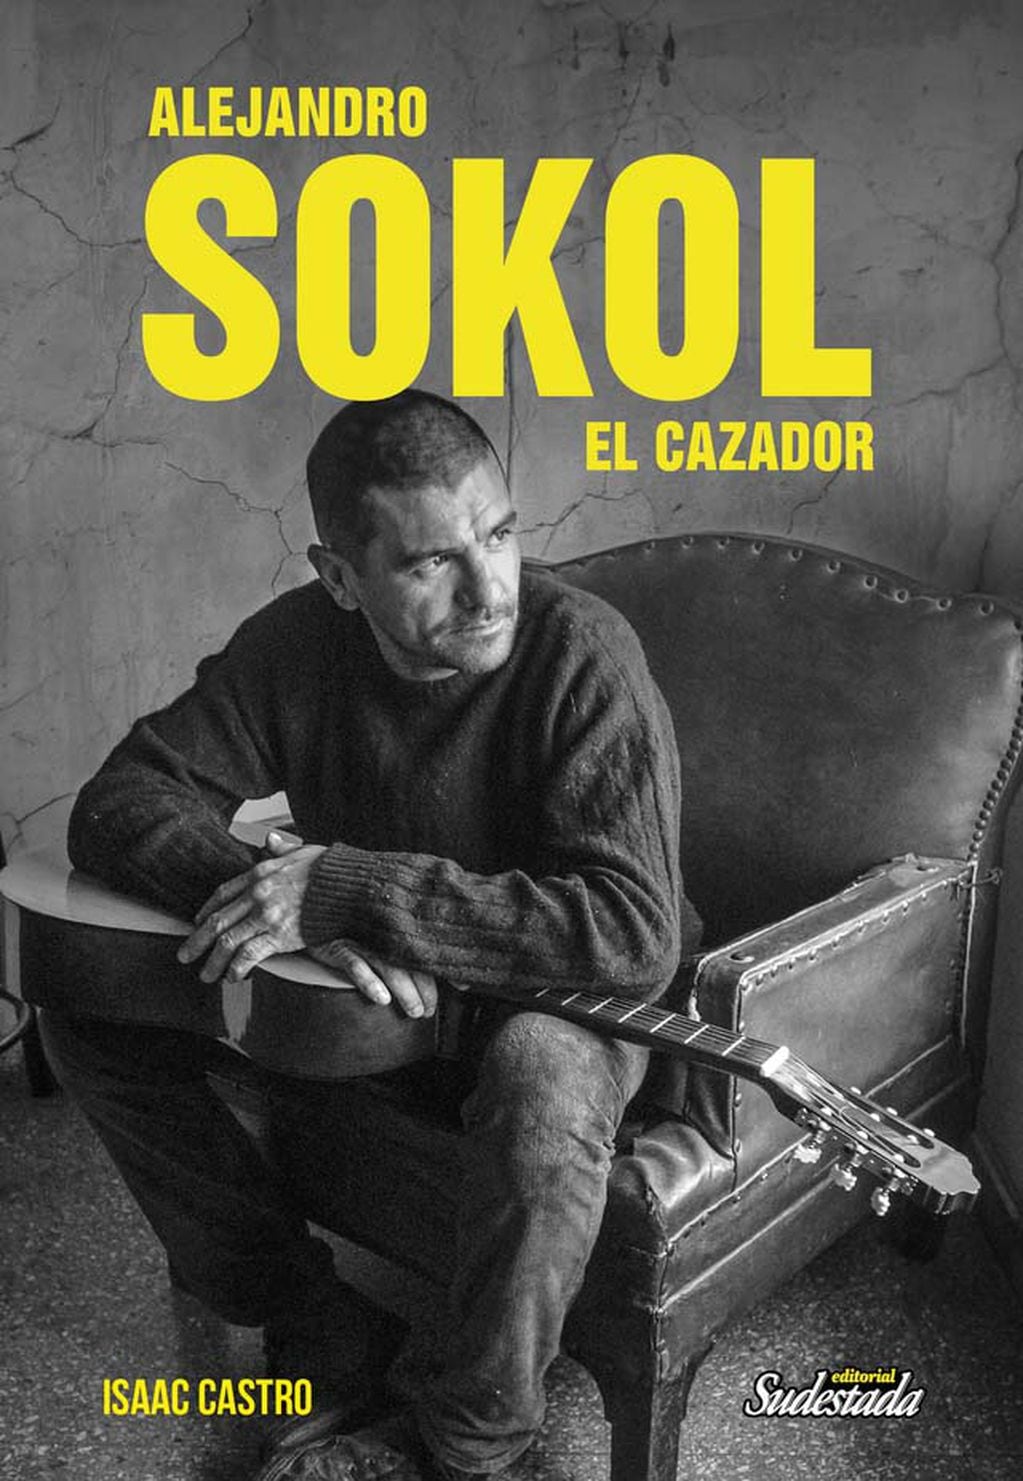 Esta biografía de Sokol, escrita por el periodista Isaac Castro, narra el caótico recorrido del Bocha, desde su debut en Sumo, pasando por su etapa mormona, su efímero grupo SOKOL y las dos décadas al frente de Las Pelotas. 